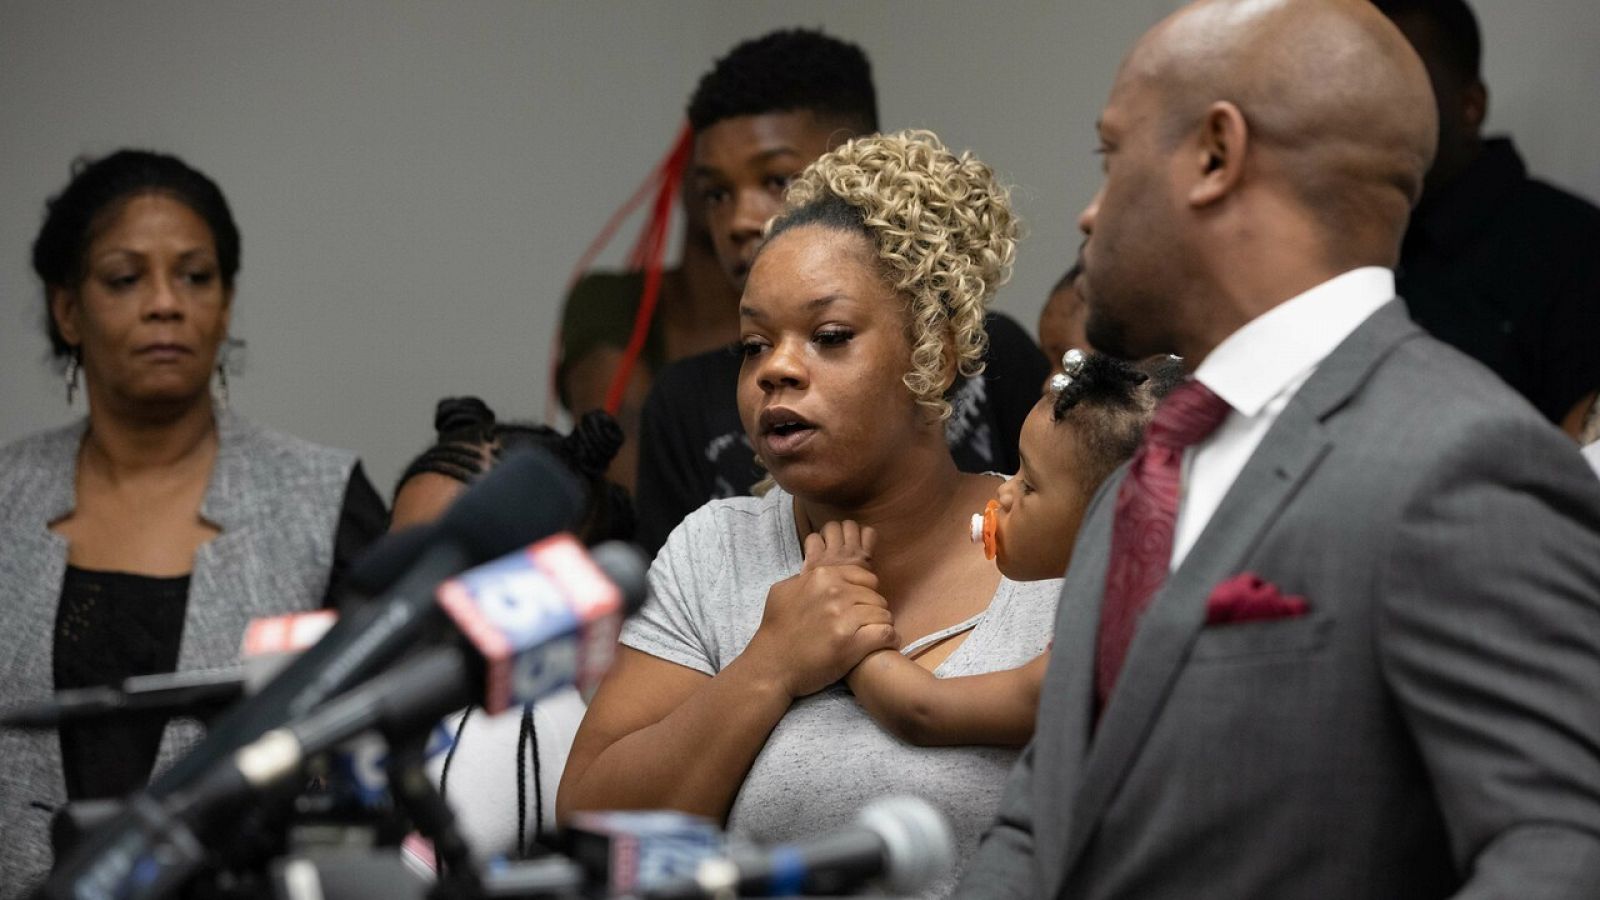 La familia del afroamericano asesinado en Atlanta pide un cambio en la mentalidad de la policía - RTVE.es